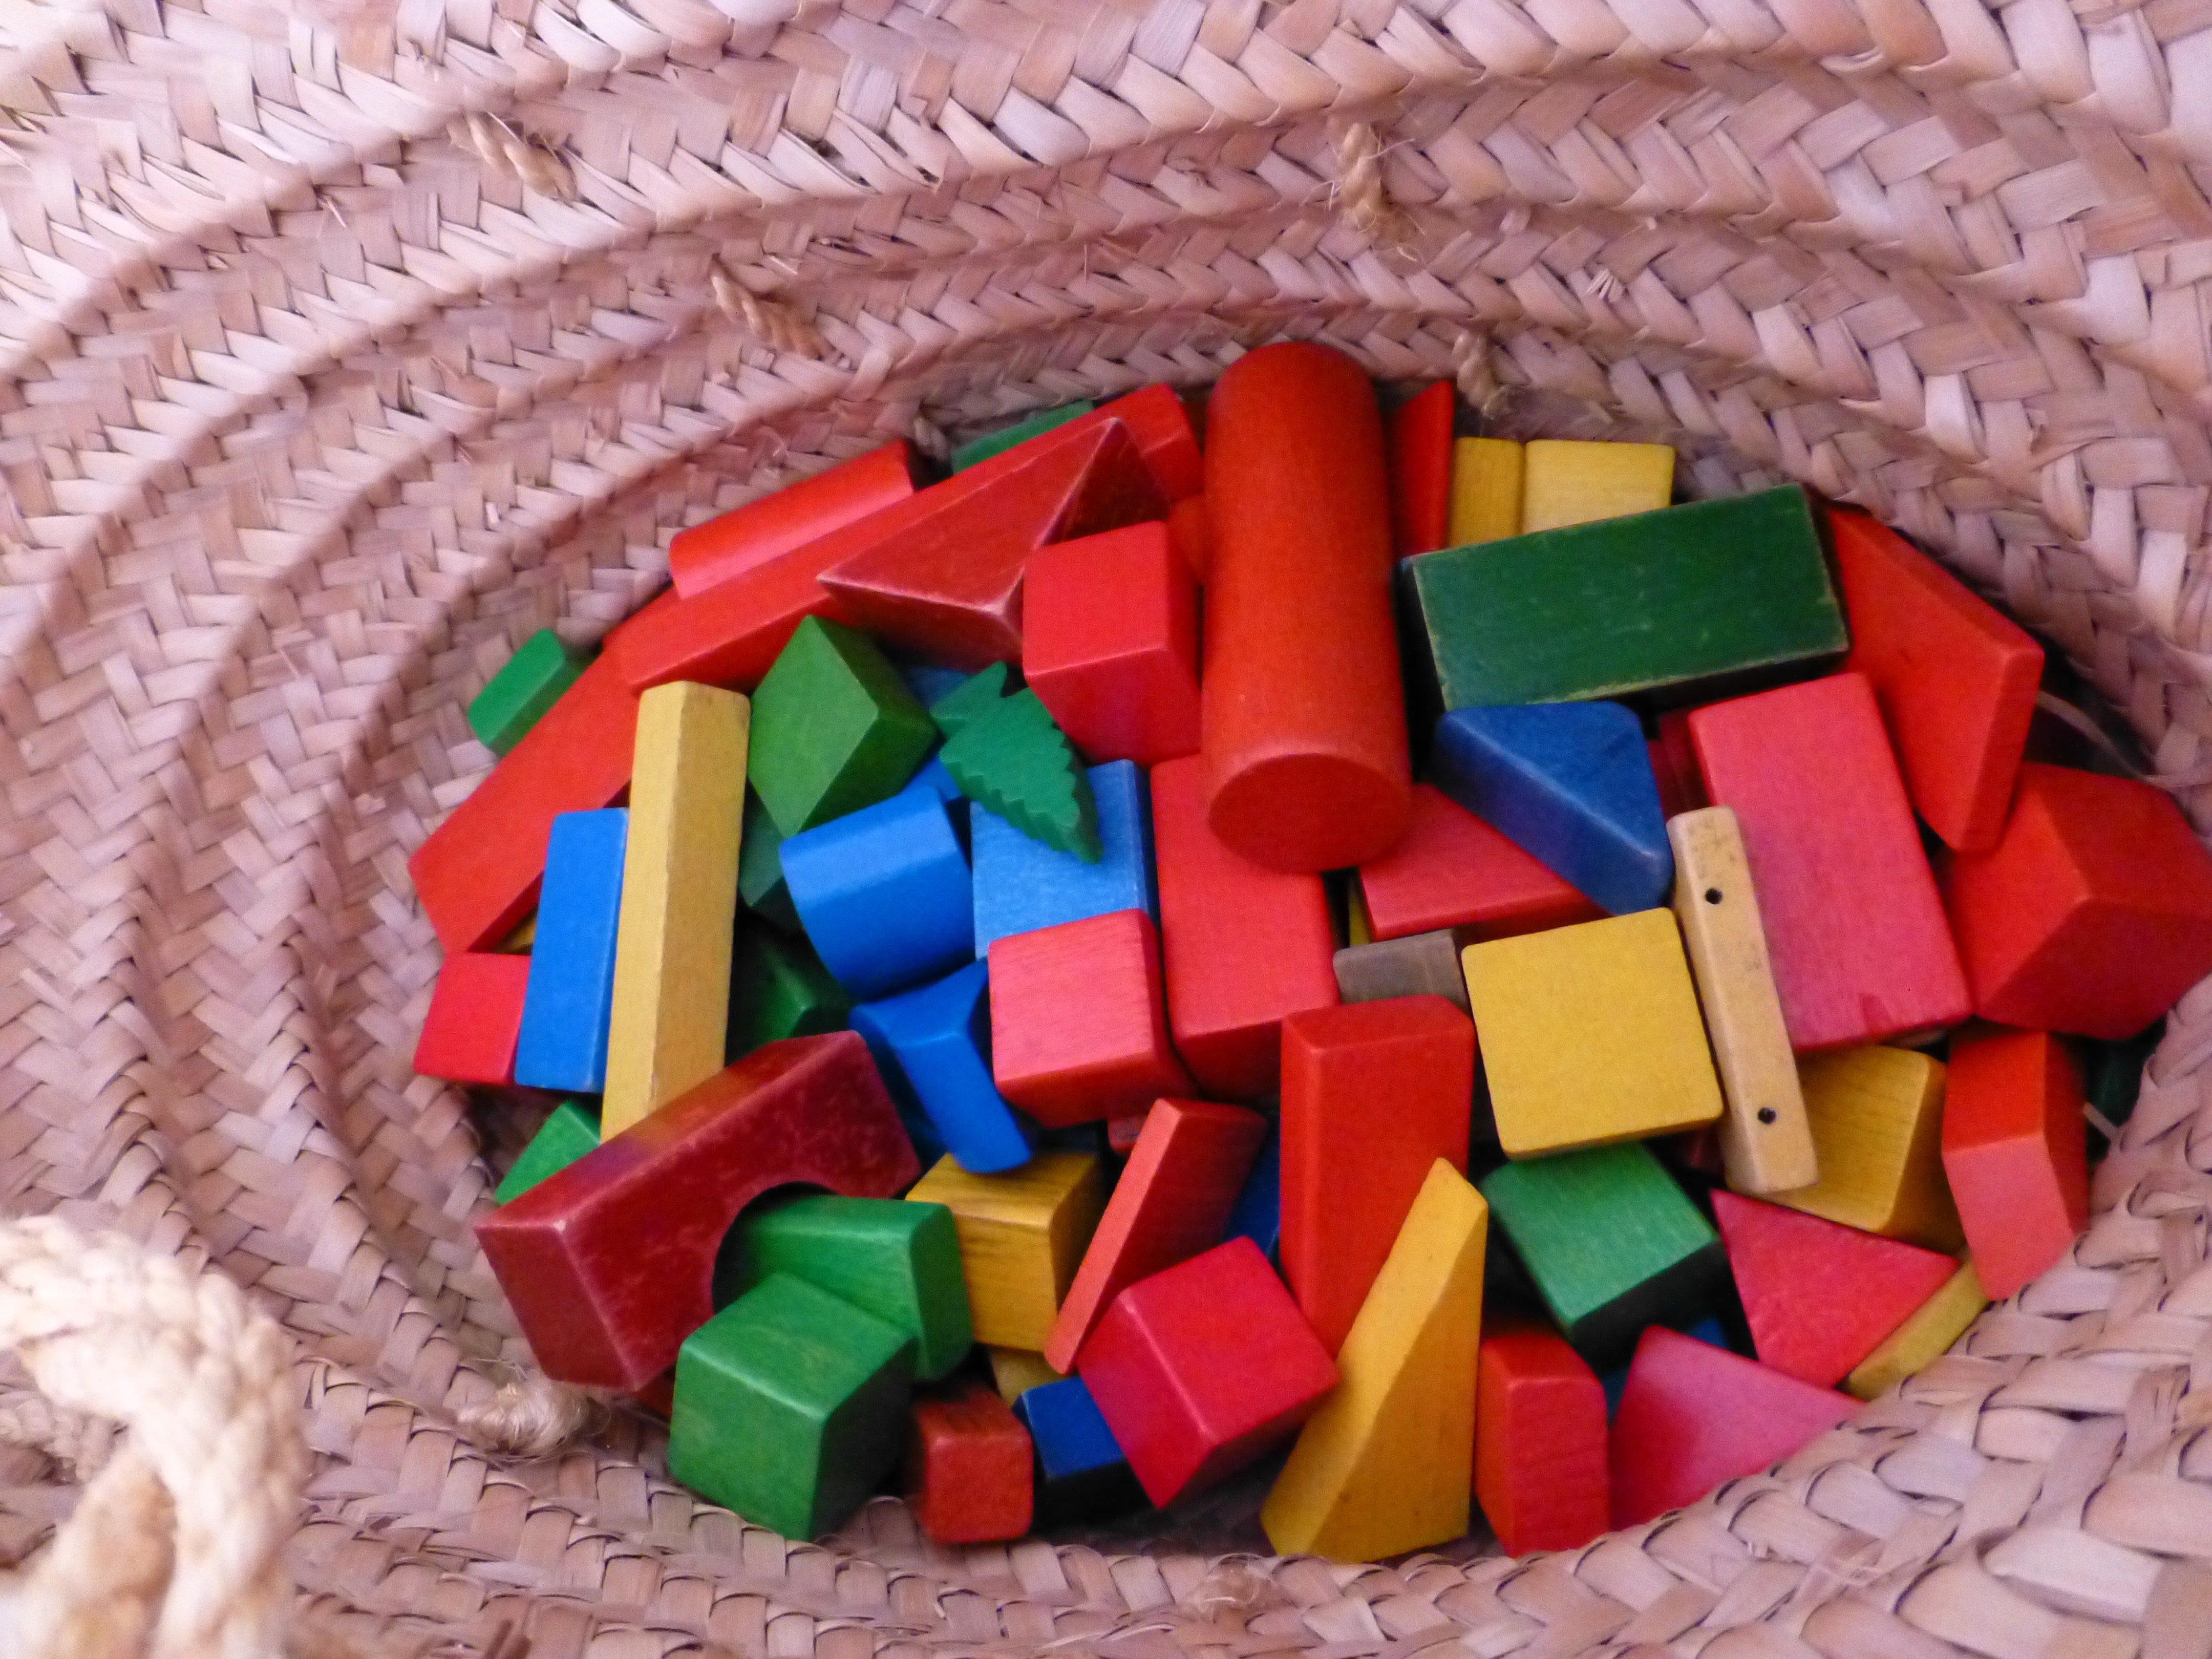 toddler's toy blocks